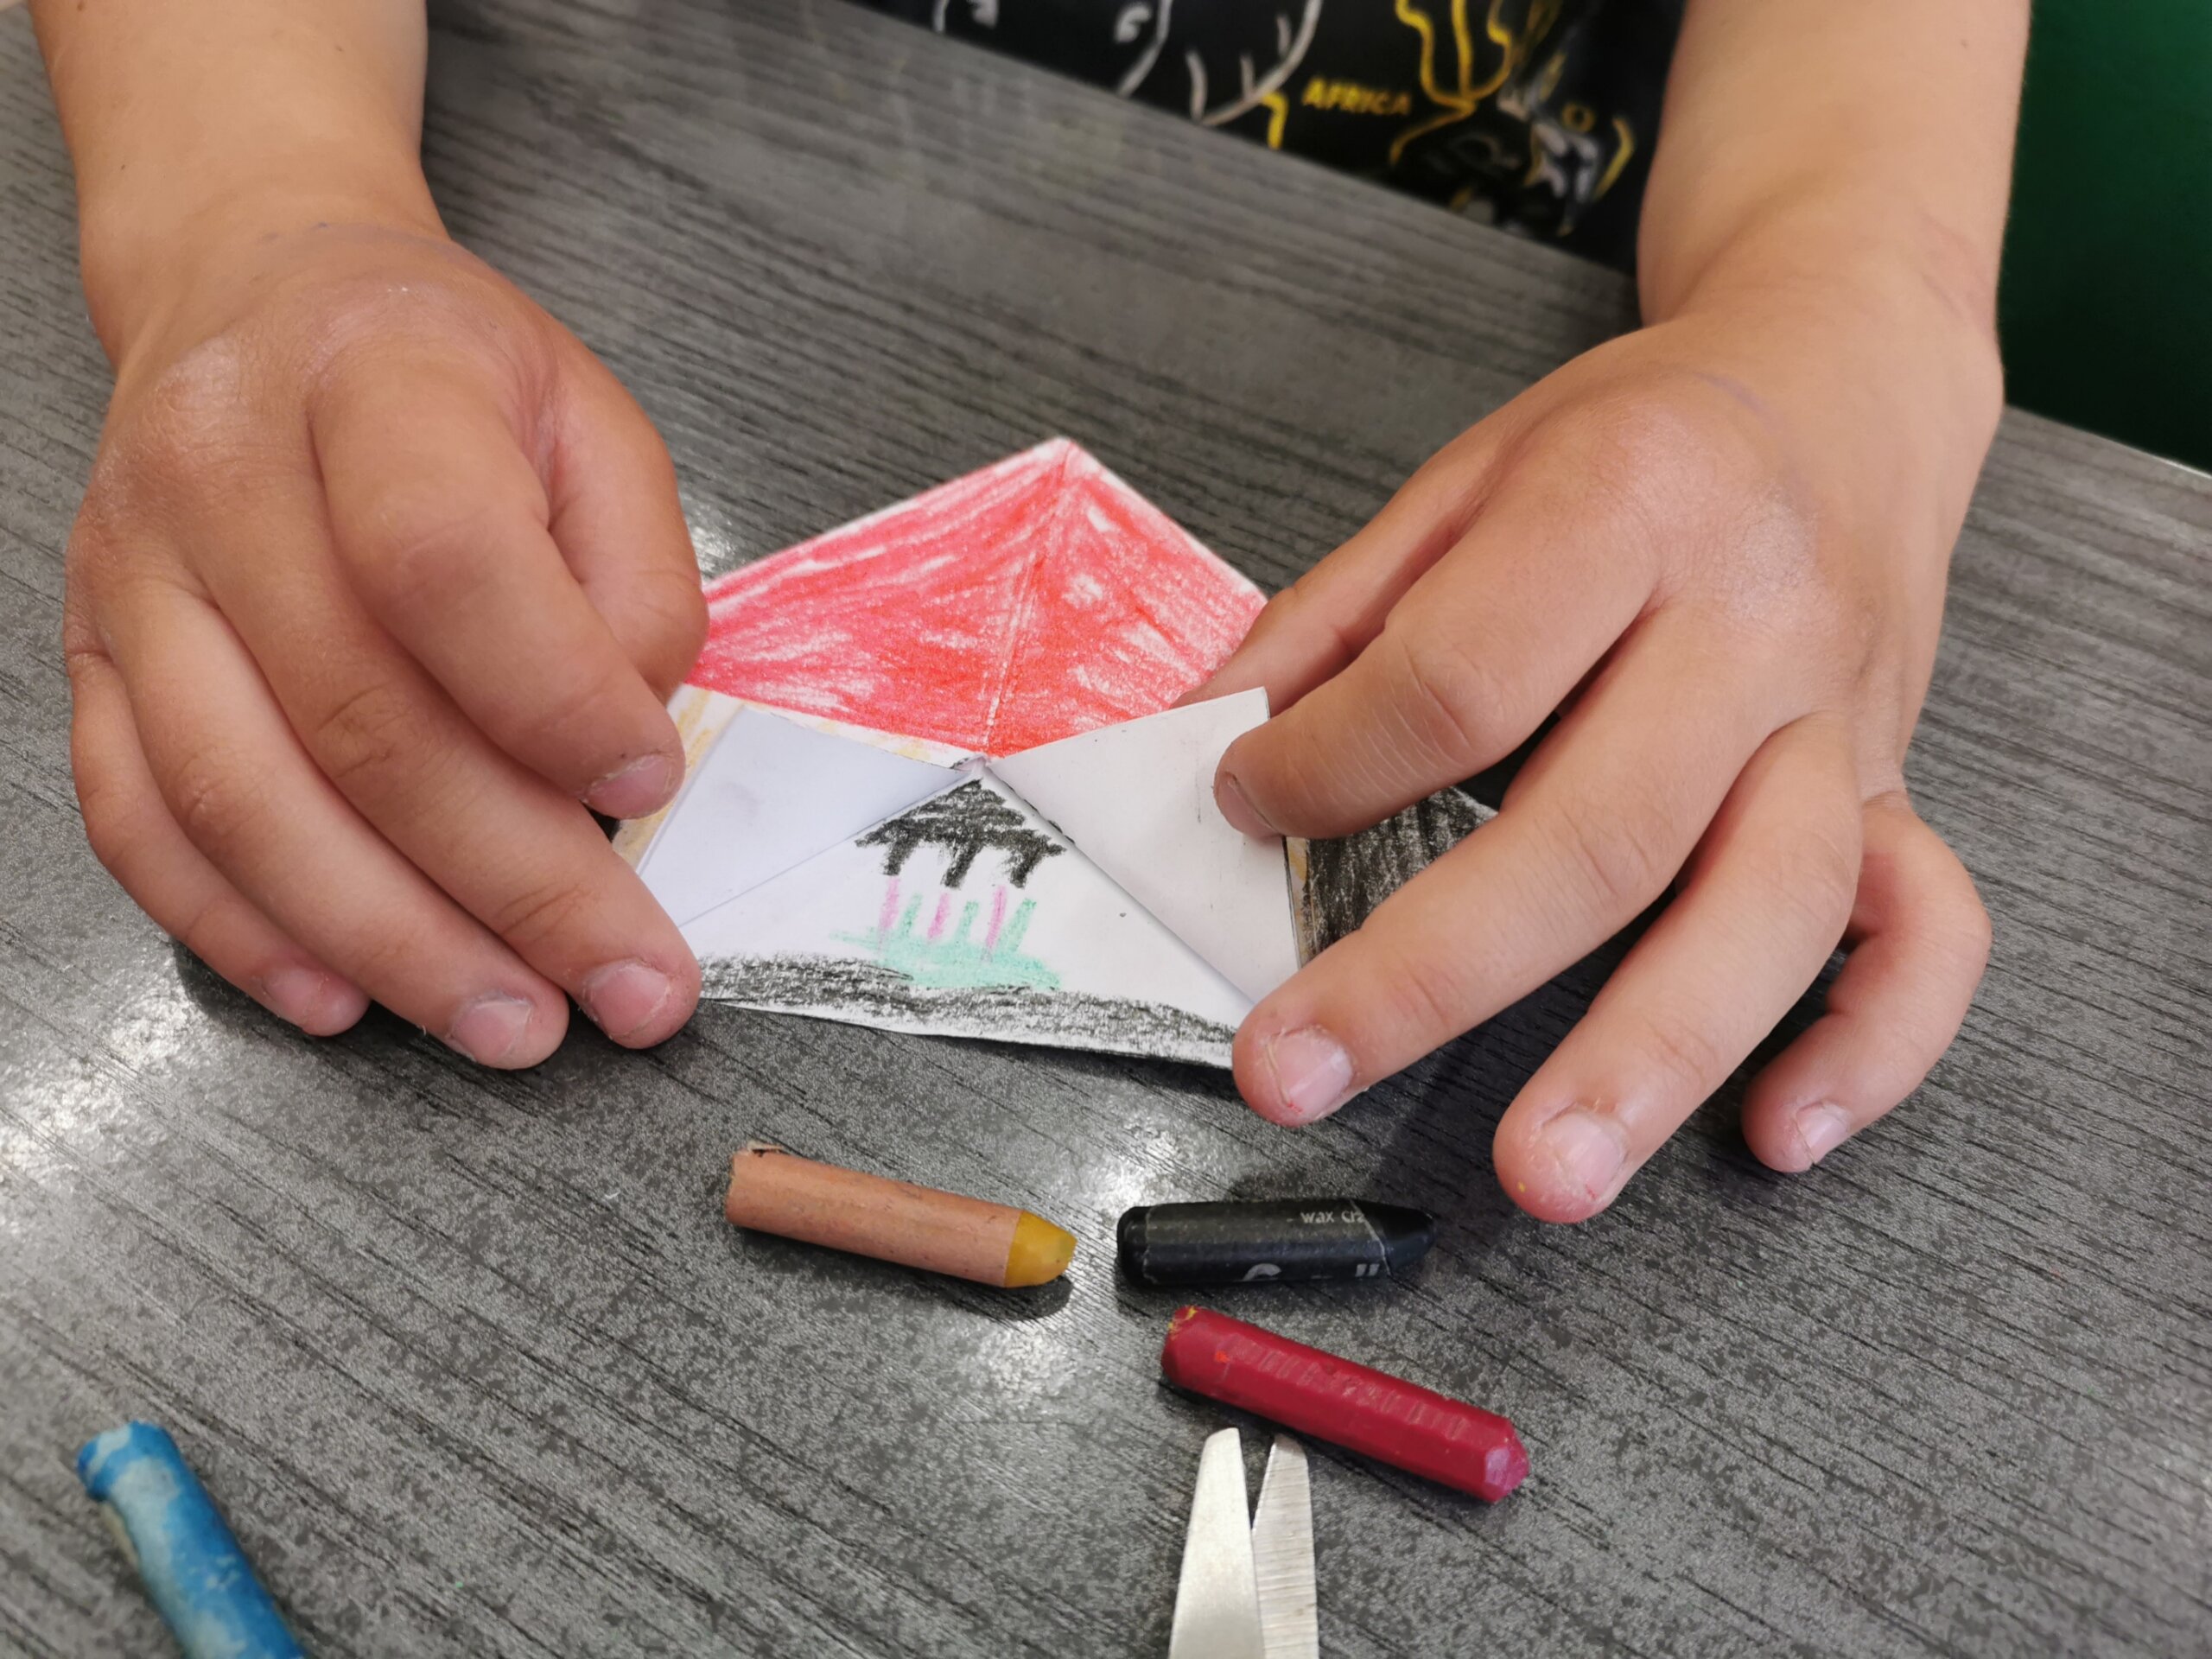 Dziecko pokazuje wykonany z papieru techniką origami namiot